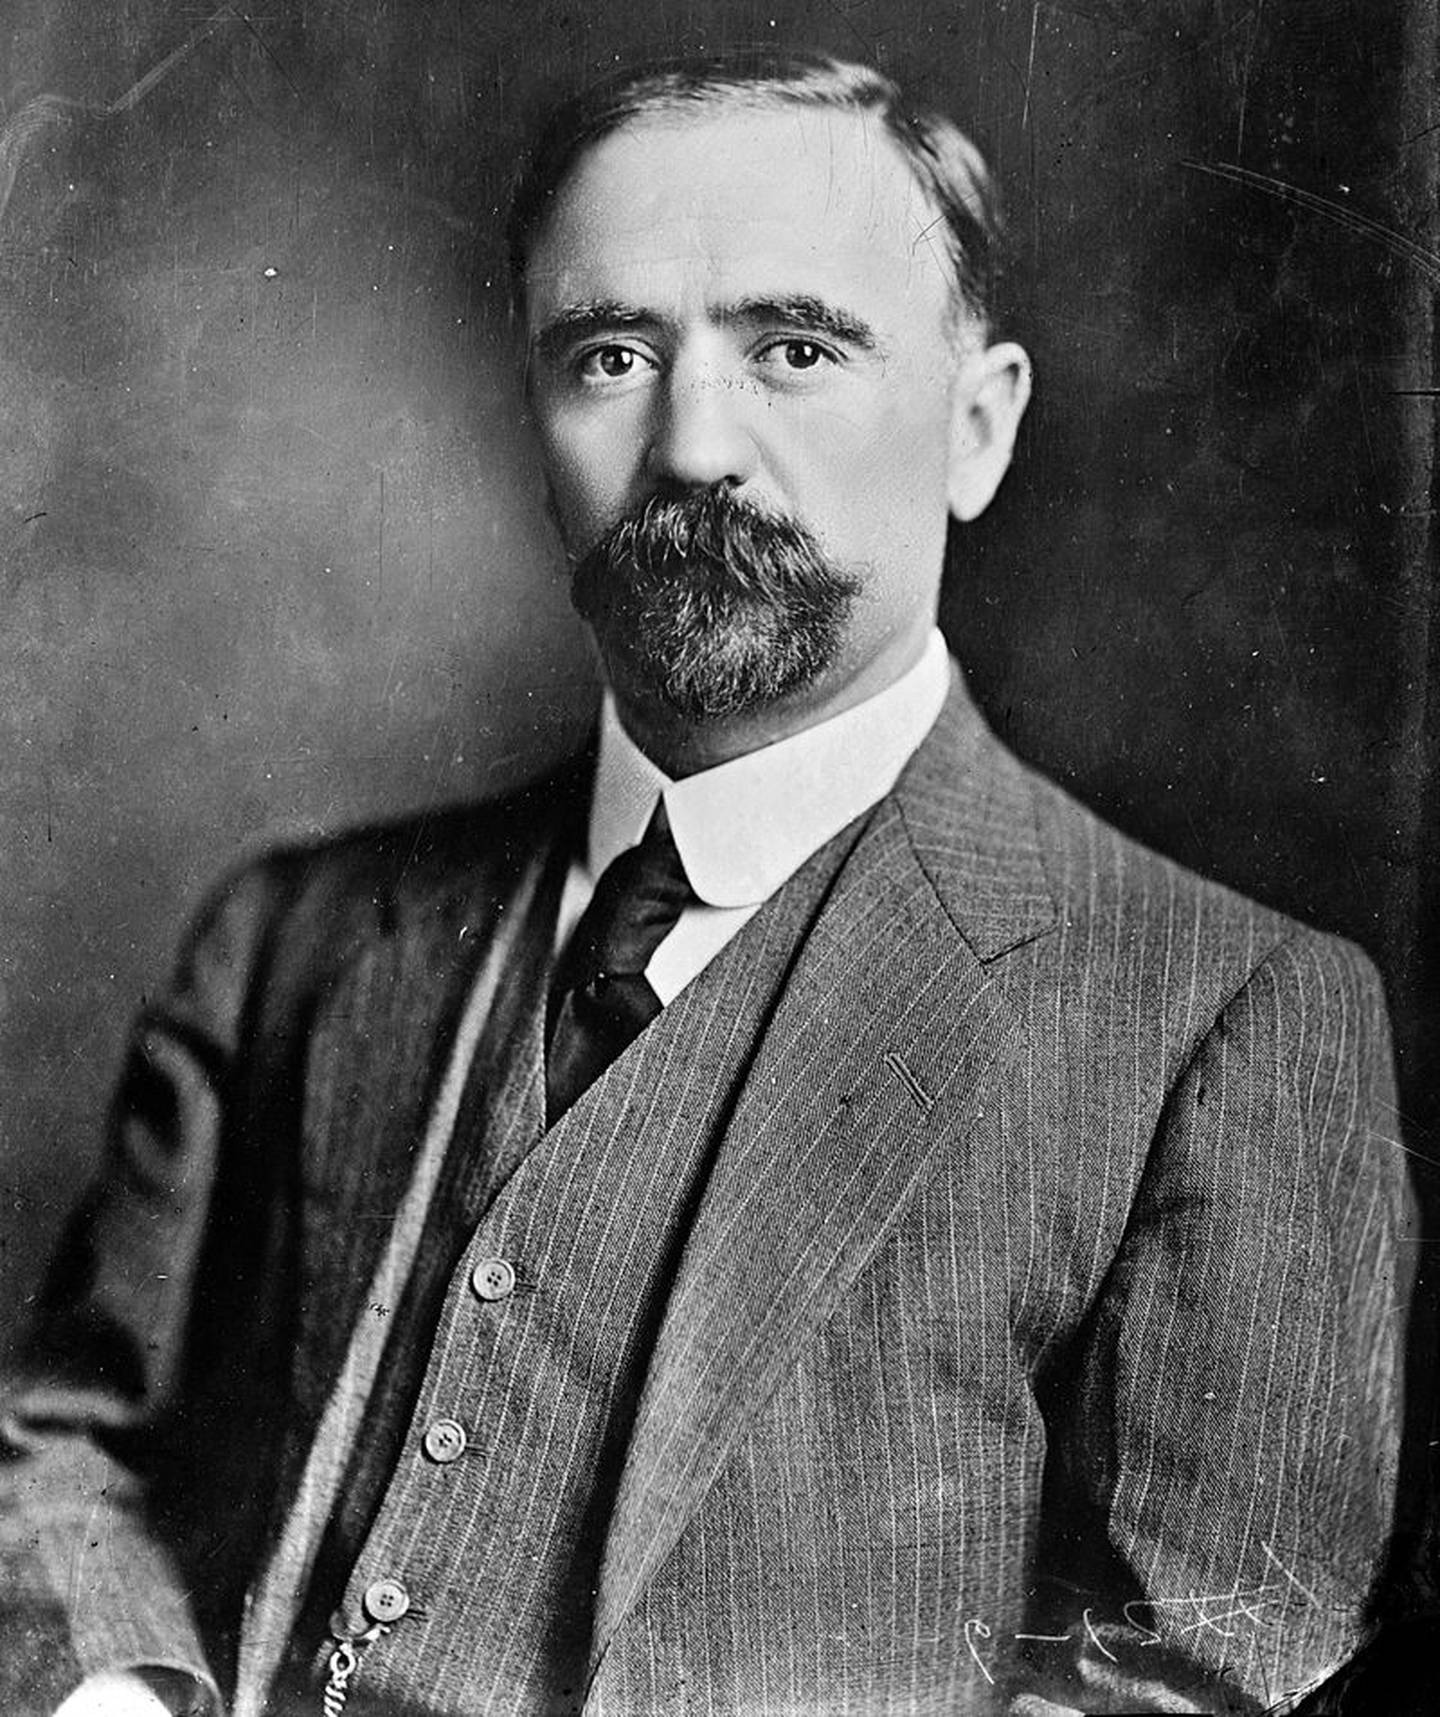 El presidente mexicano Francisco I. Madero G. (1873-1913). Enrique Krauze, “Francisco Madero: místico de la libertad”, 1987.